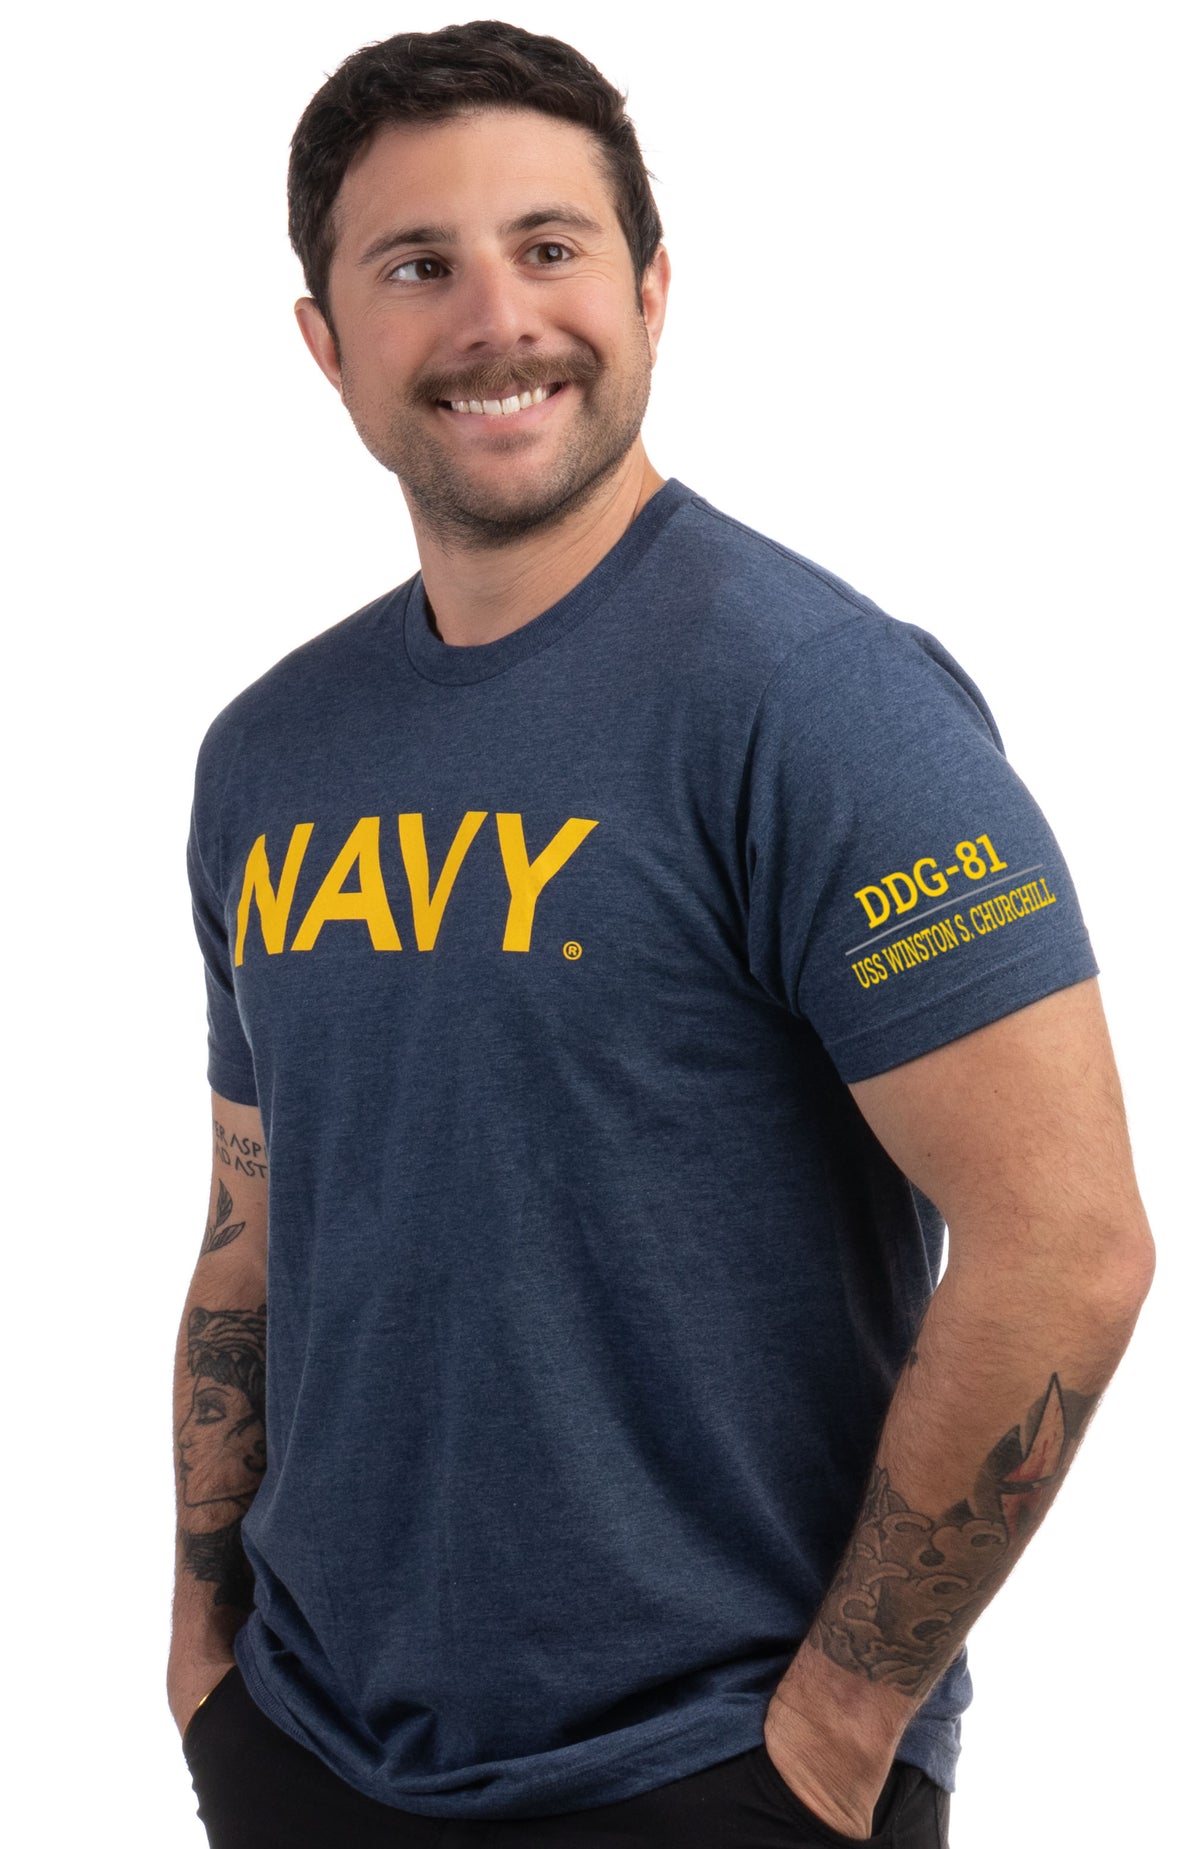 USS Winston S. Churchill, DDG-81 | U.S. Navy Sailor Veteran USN United States Naval T-shirt for Men Women